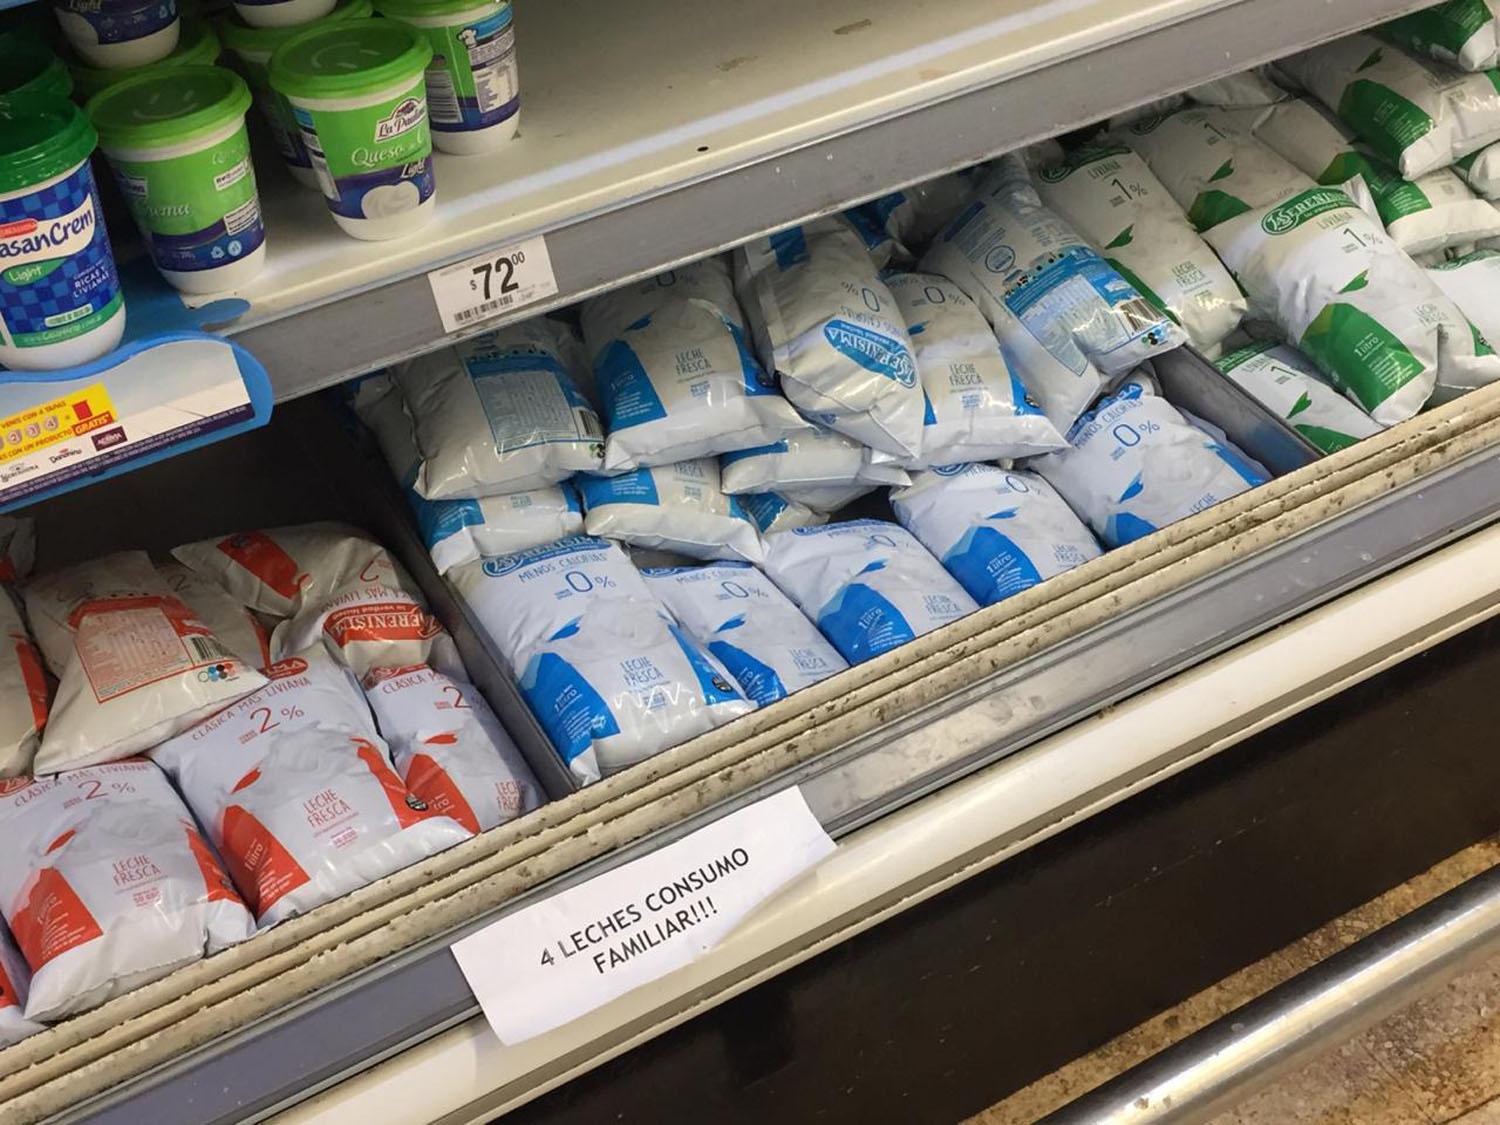 DESABASTECIMIENTO. El faltante de leche en la góndola de lácteos se hace notar en los supermercados de la zona céntrica.